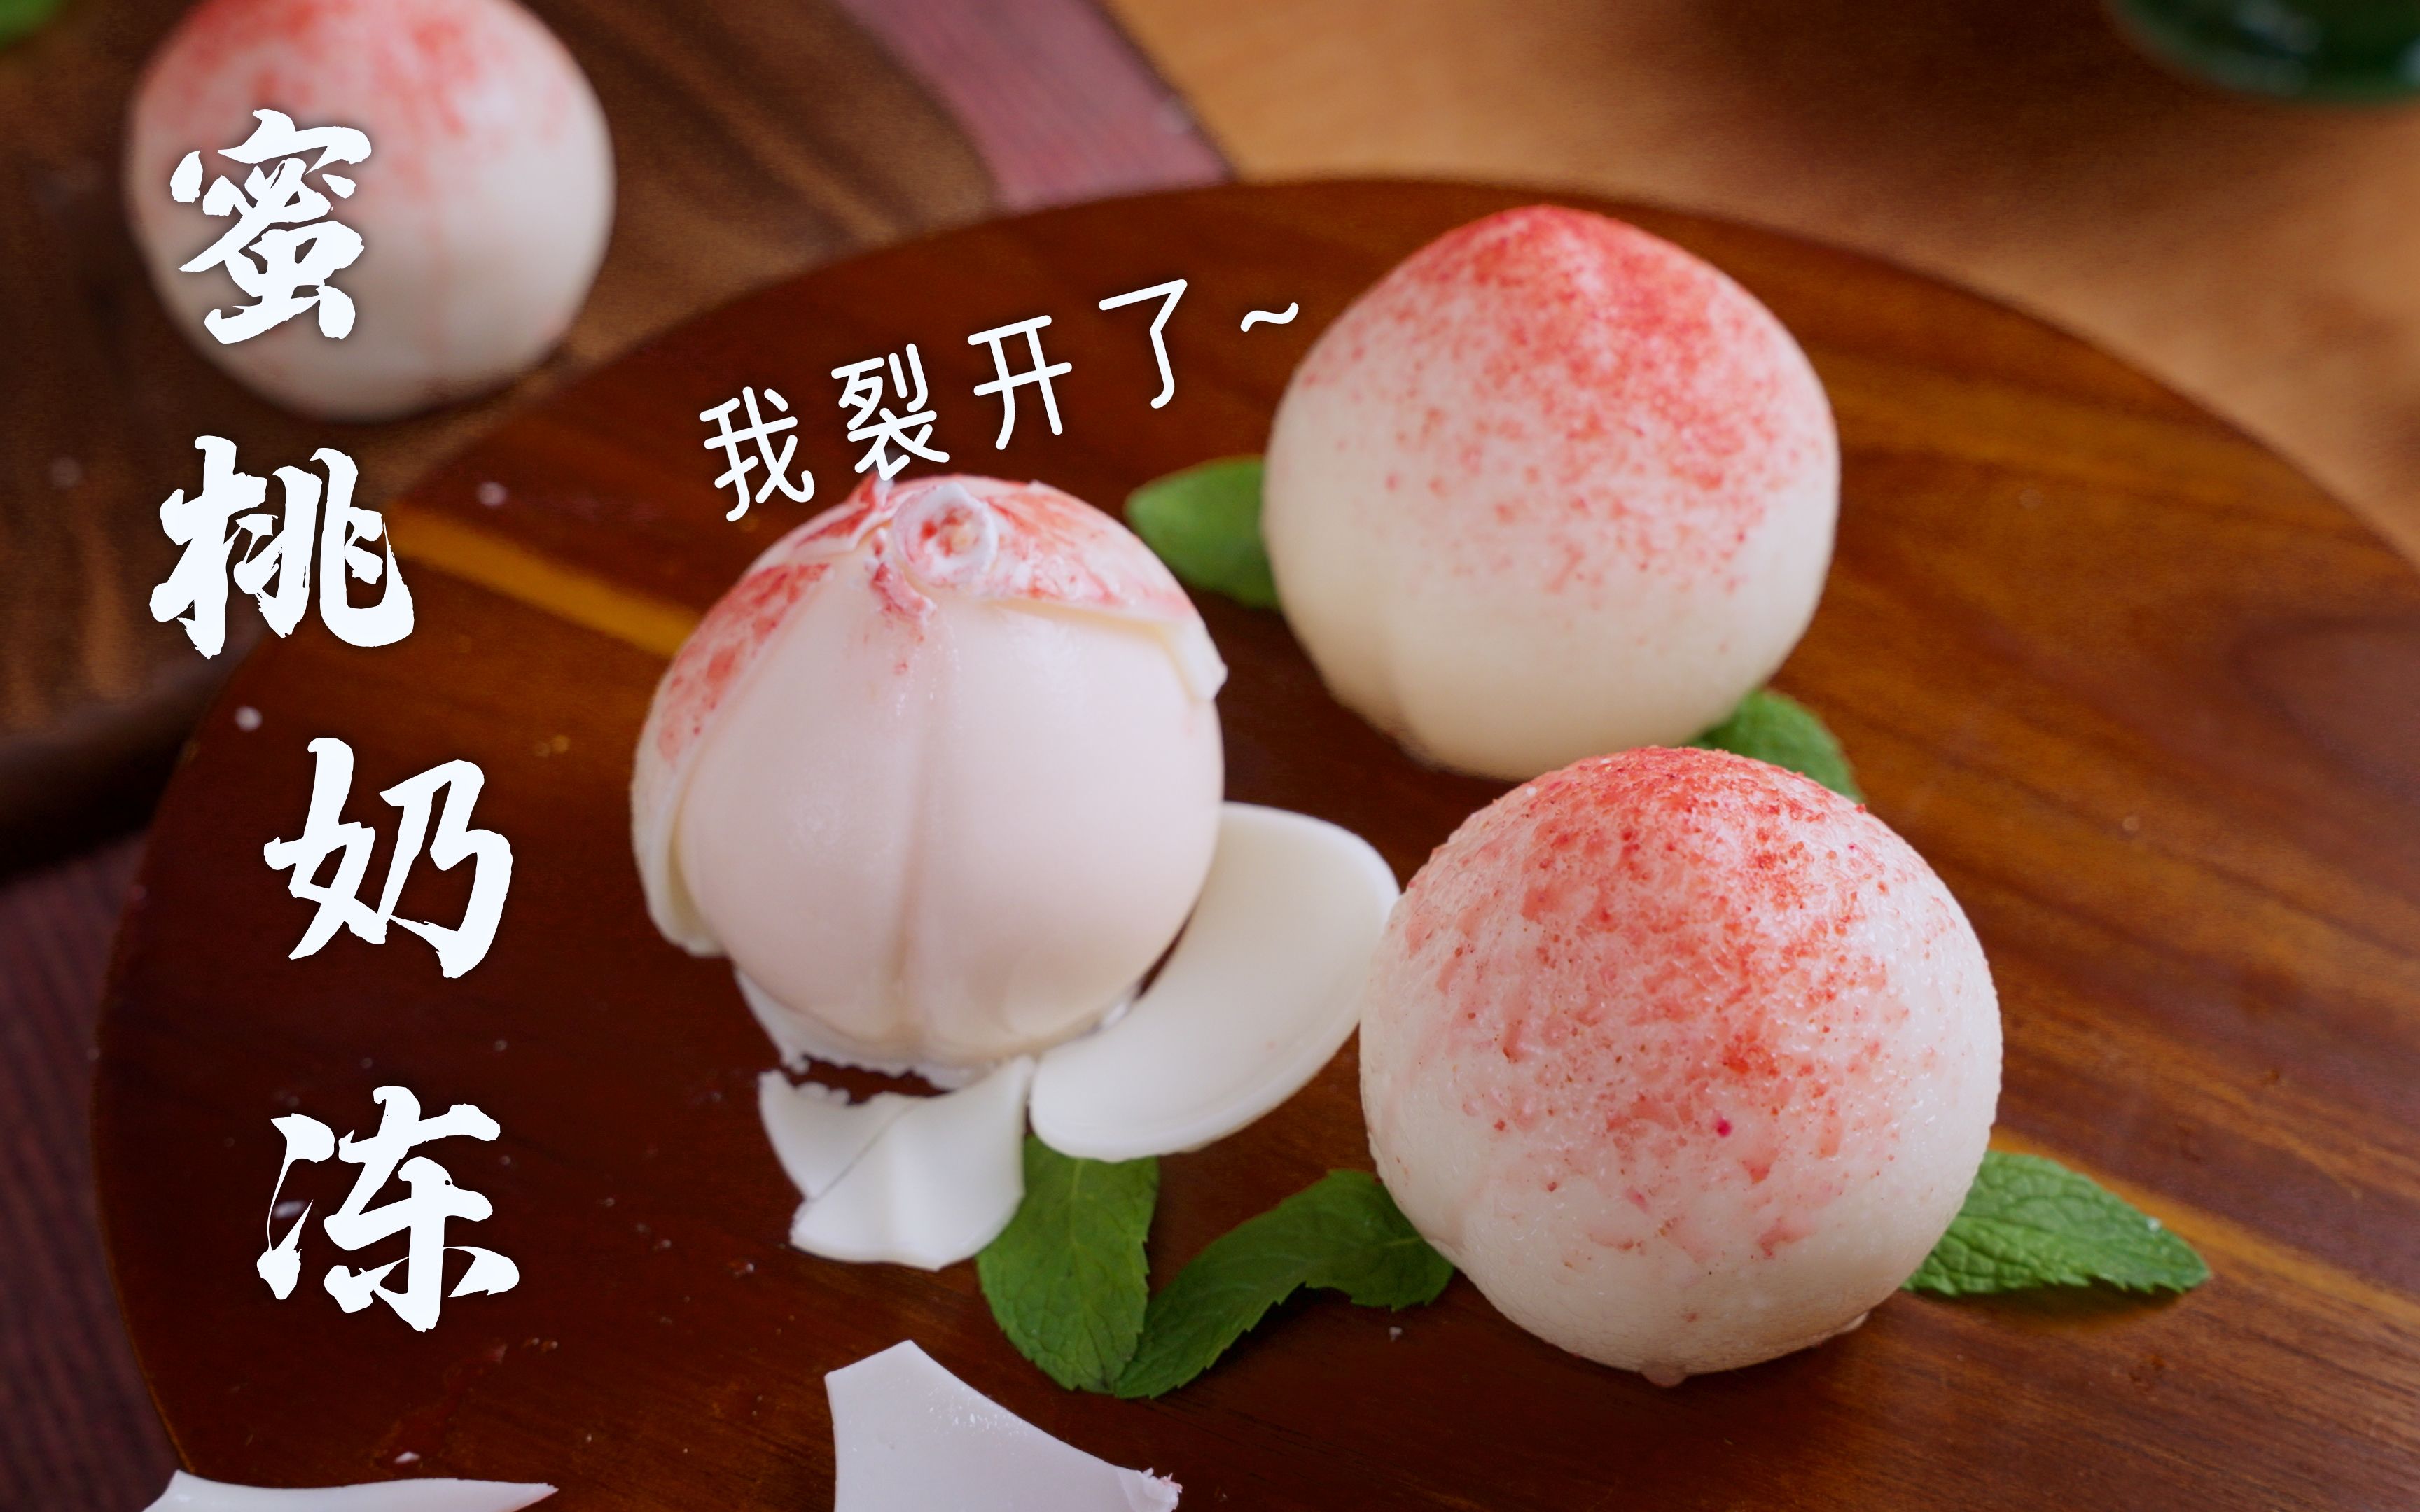 草莓奶盖水果茶粉色产品茶饮高清摄影大图-千库网